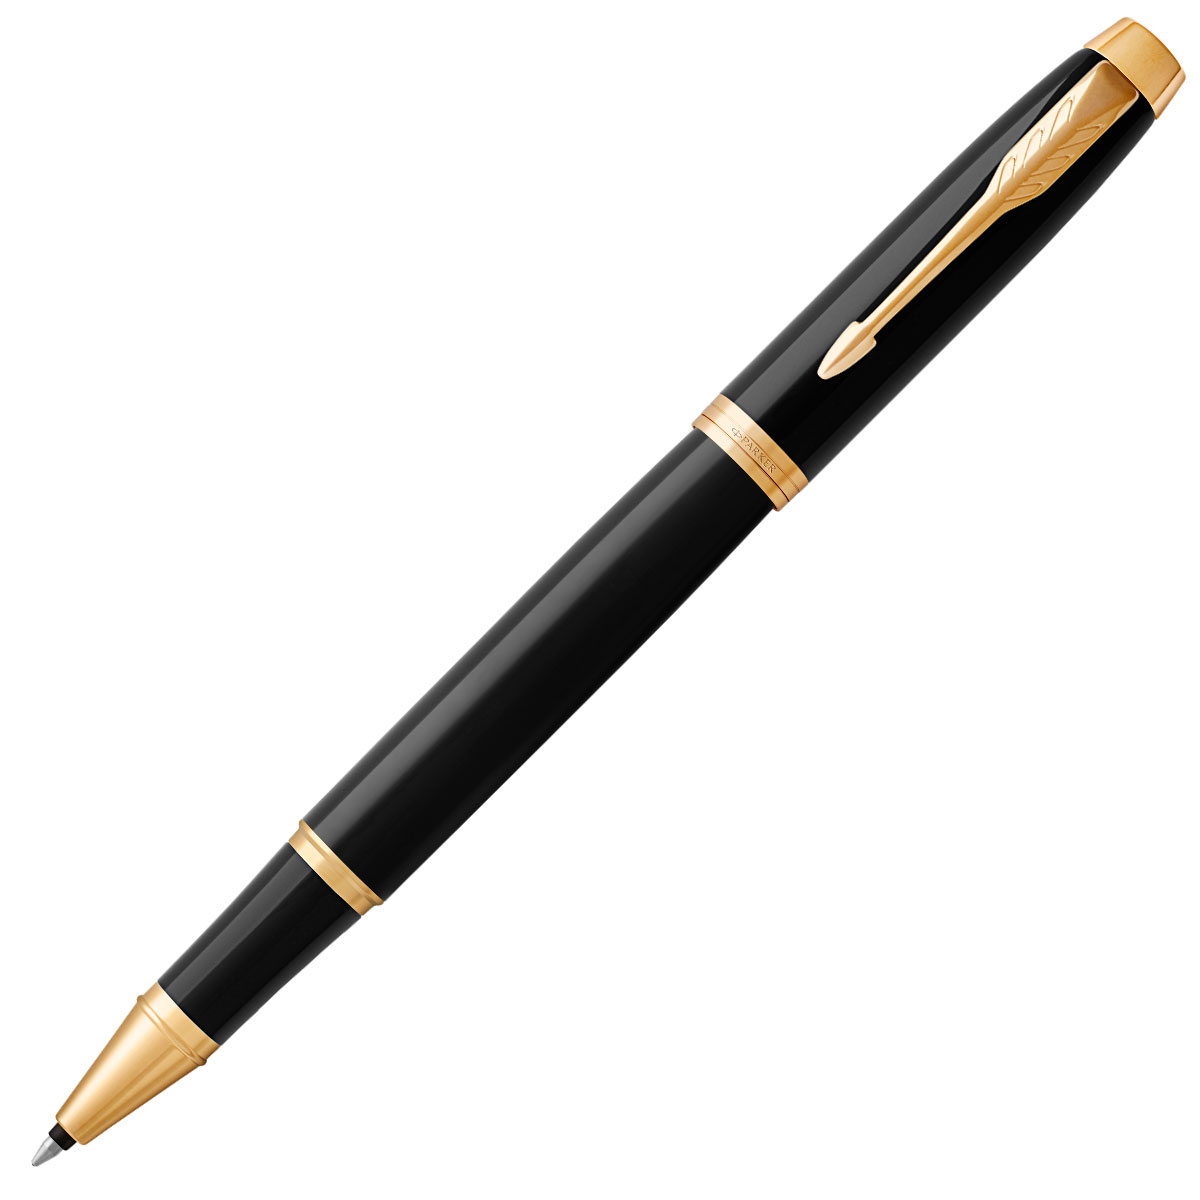 派克（PARKER）签字笔/宝珠笔新款IM系列 丽雅黑色金夹商务办公礼品定制